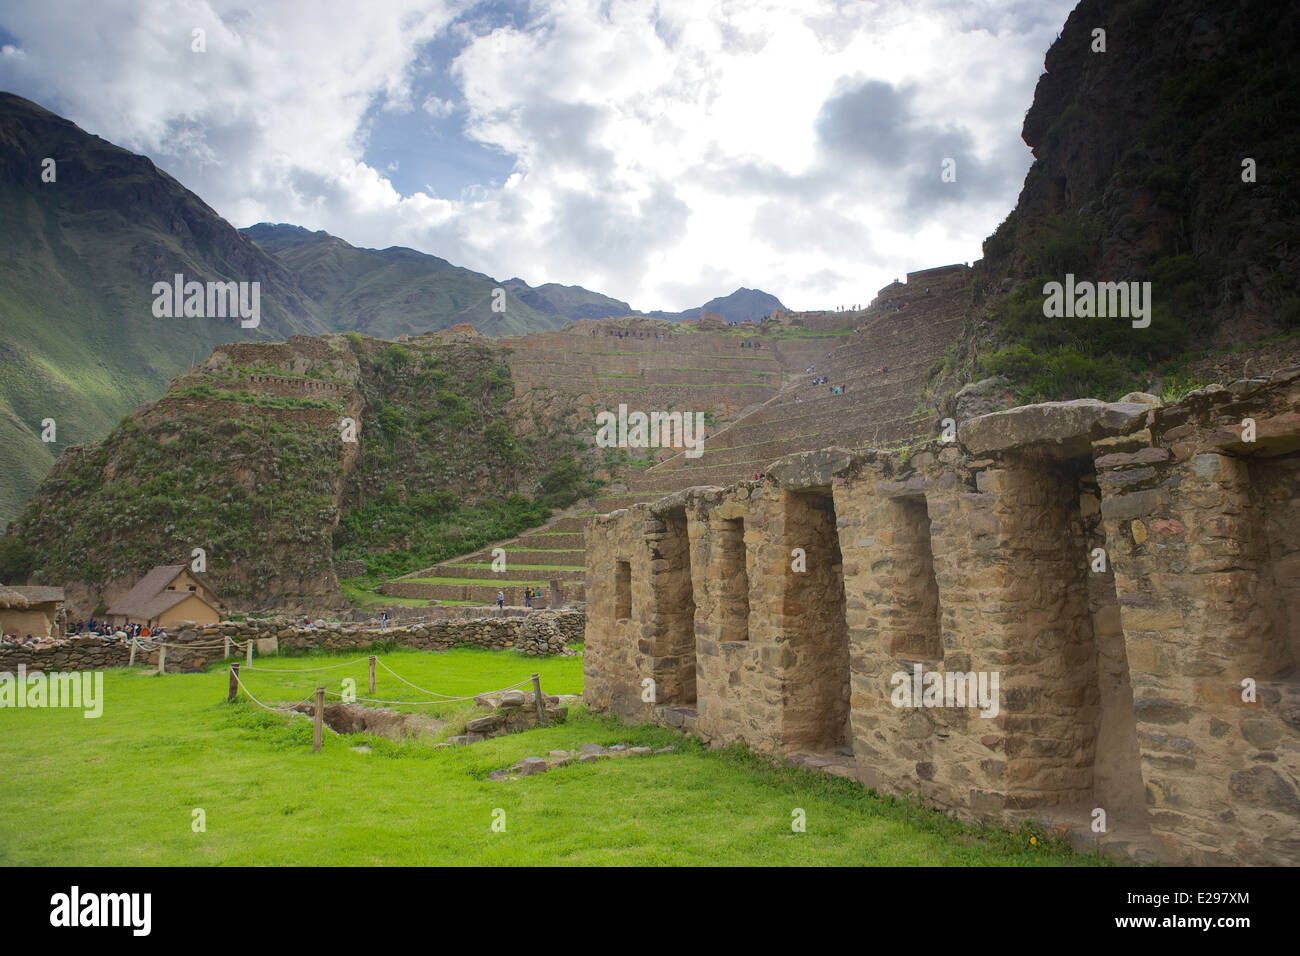 Belles ruines Incas à Ollantaytambo dans la Vallée Sacrée, le Valle Sagrada, près de Cusco au Pérou, Amérique du Sud Banque D'Images